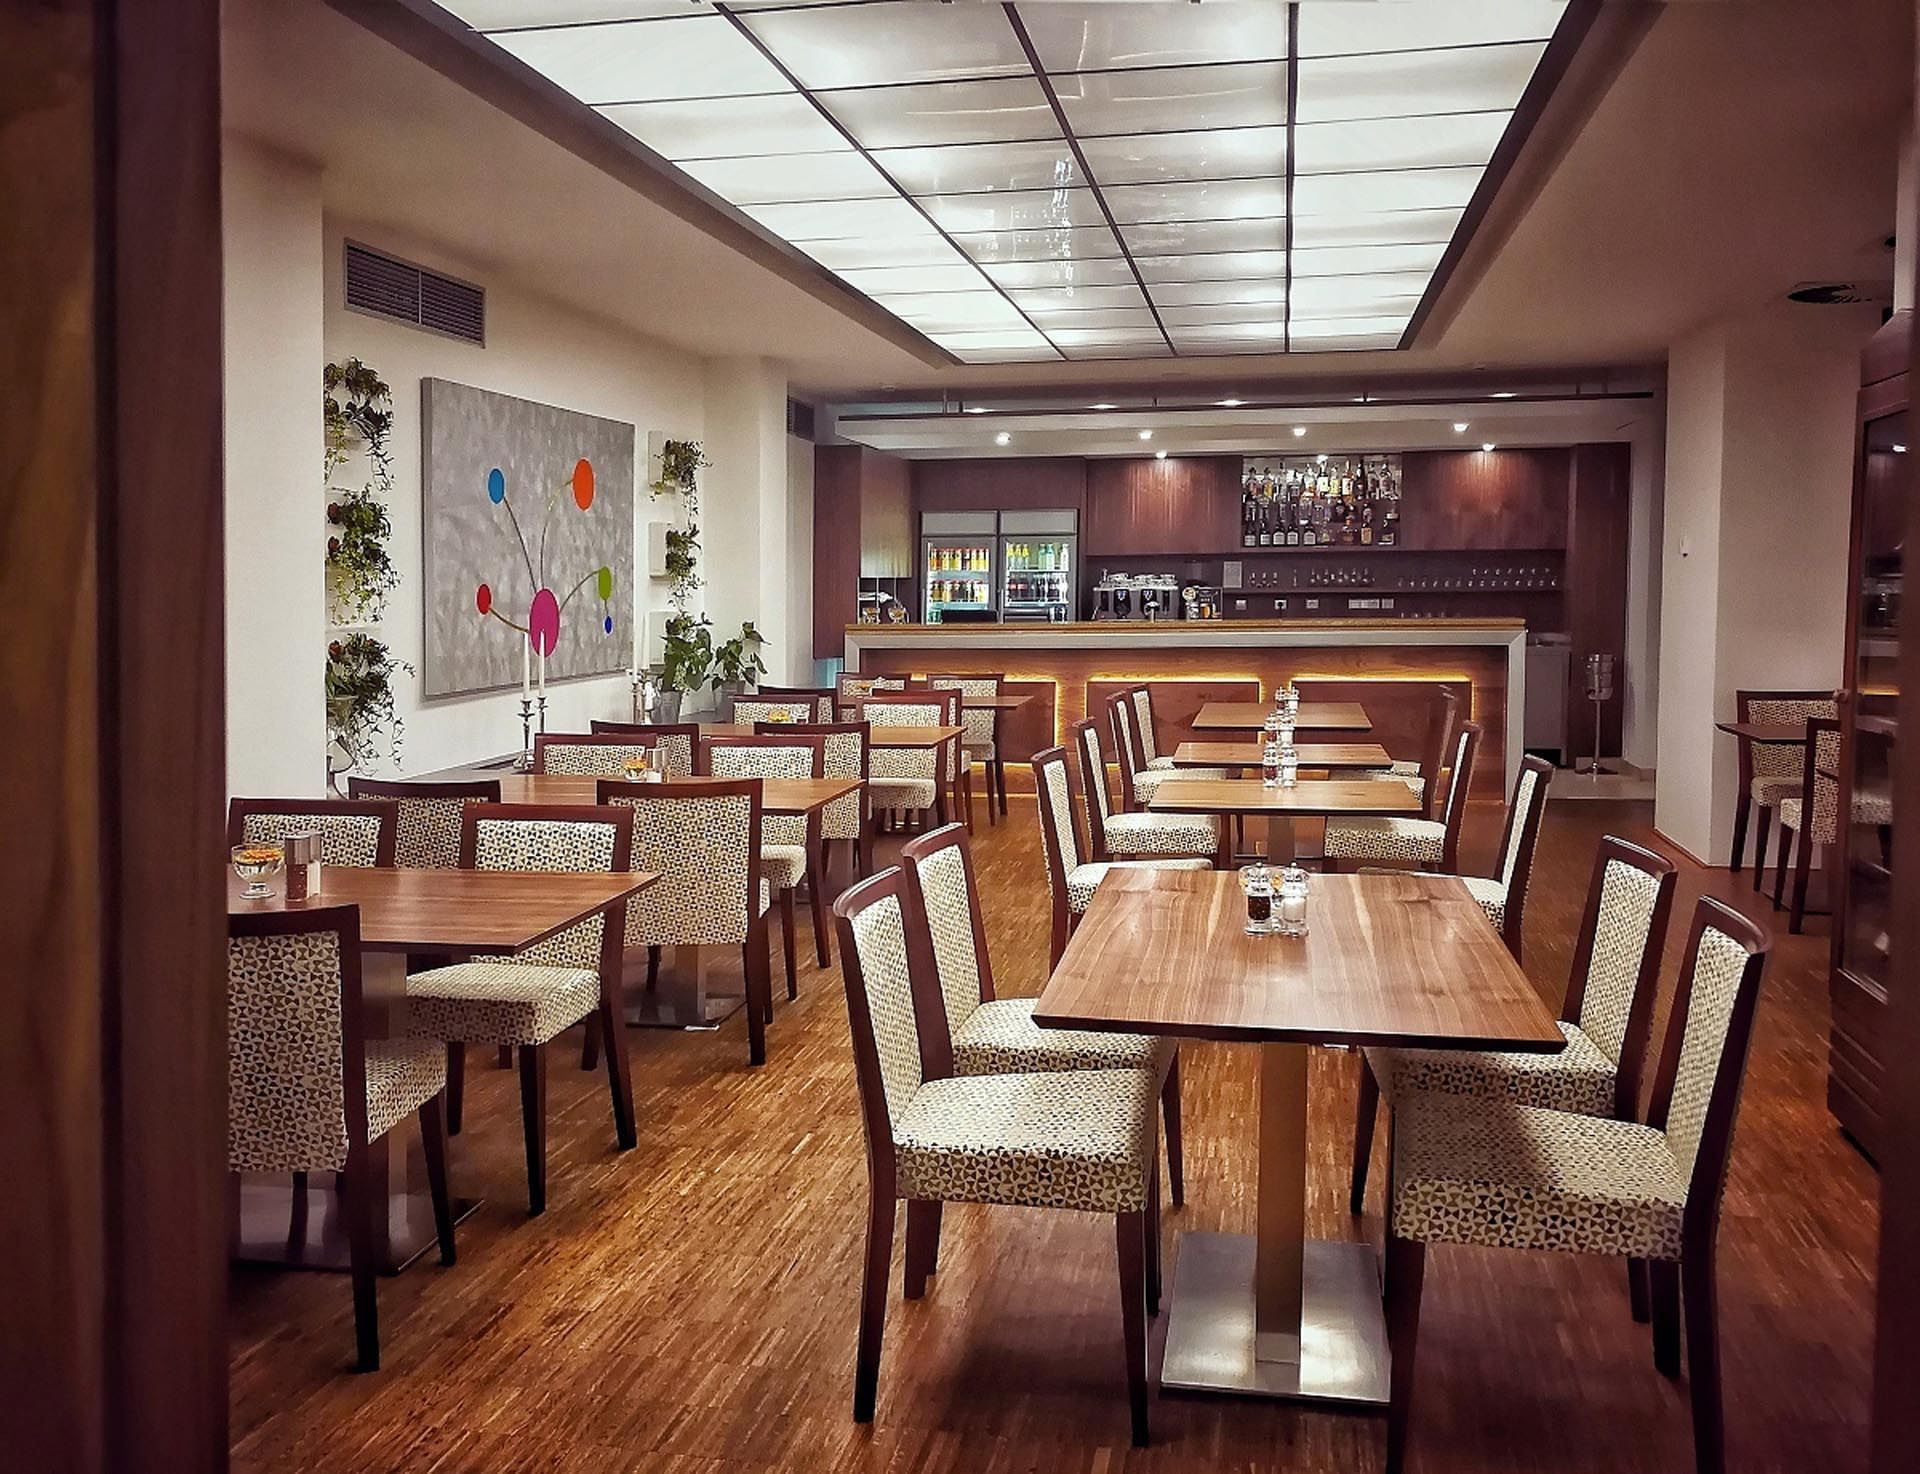 Restaurant dining area at Hotel Amarilis